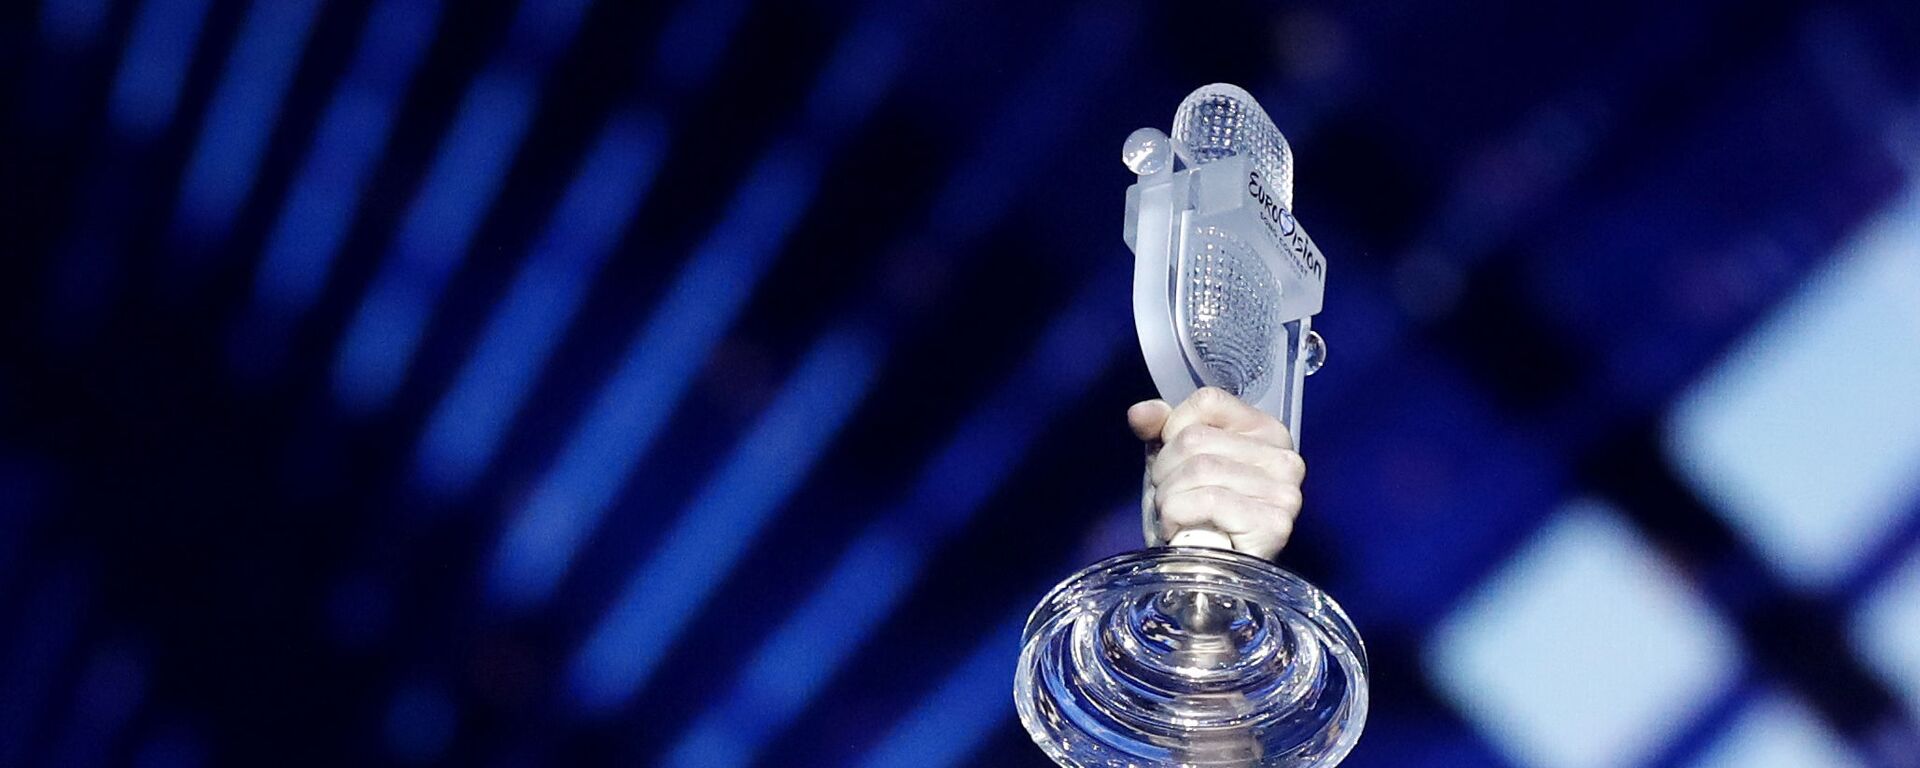 Микрофон с конкурса Евровидение - Sputnik Таджикистан, 1920, 10.03.2021